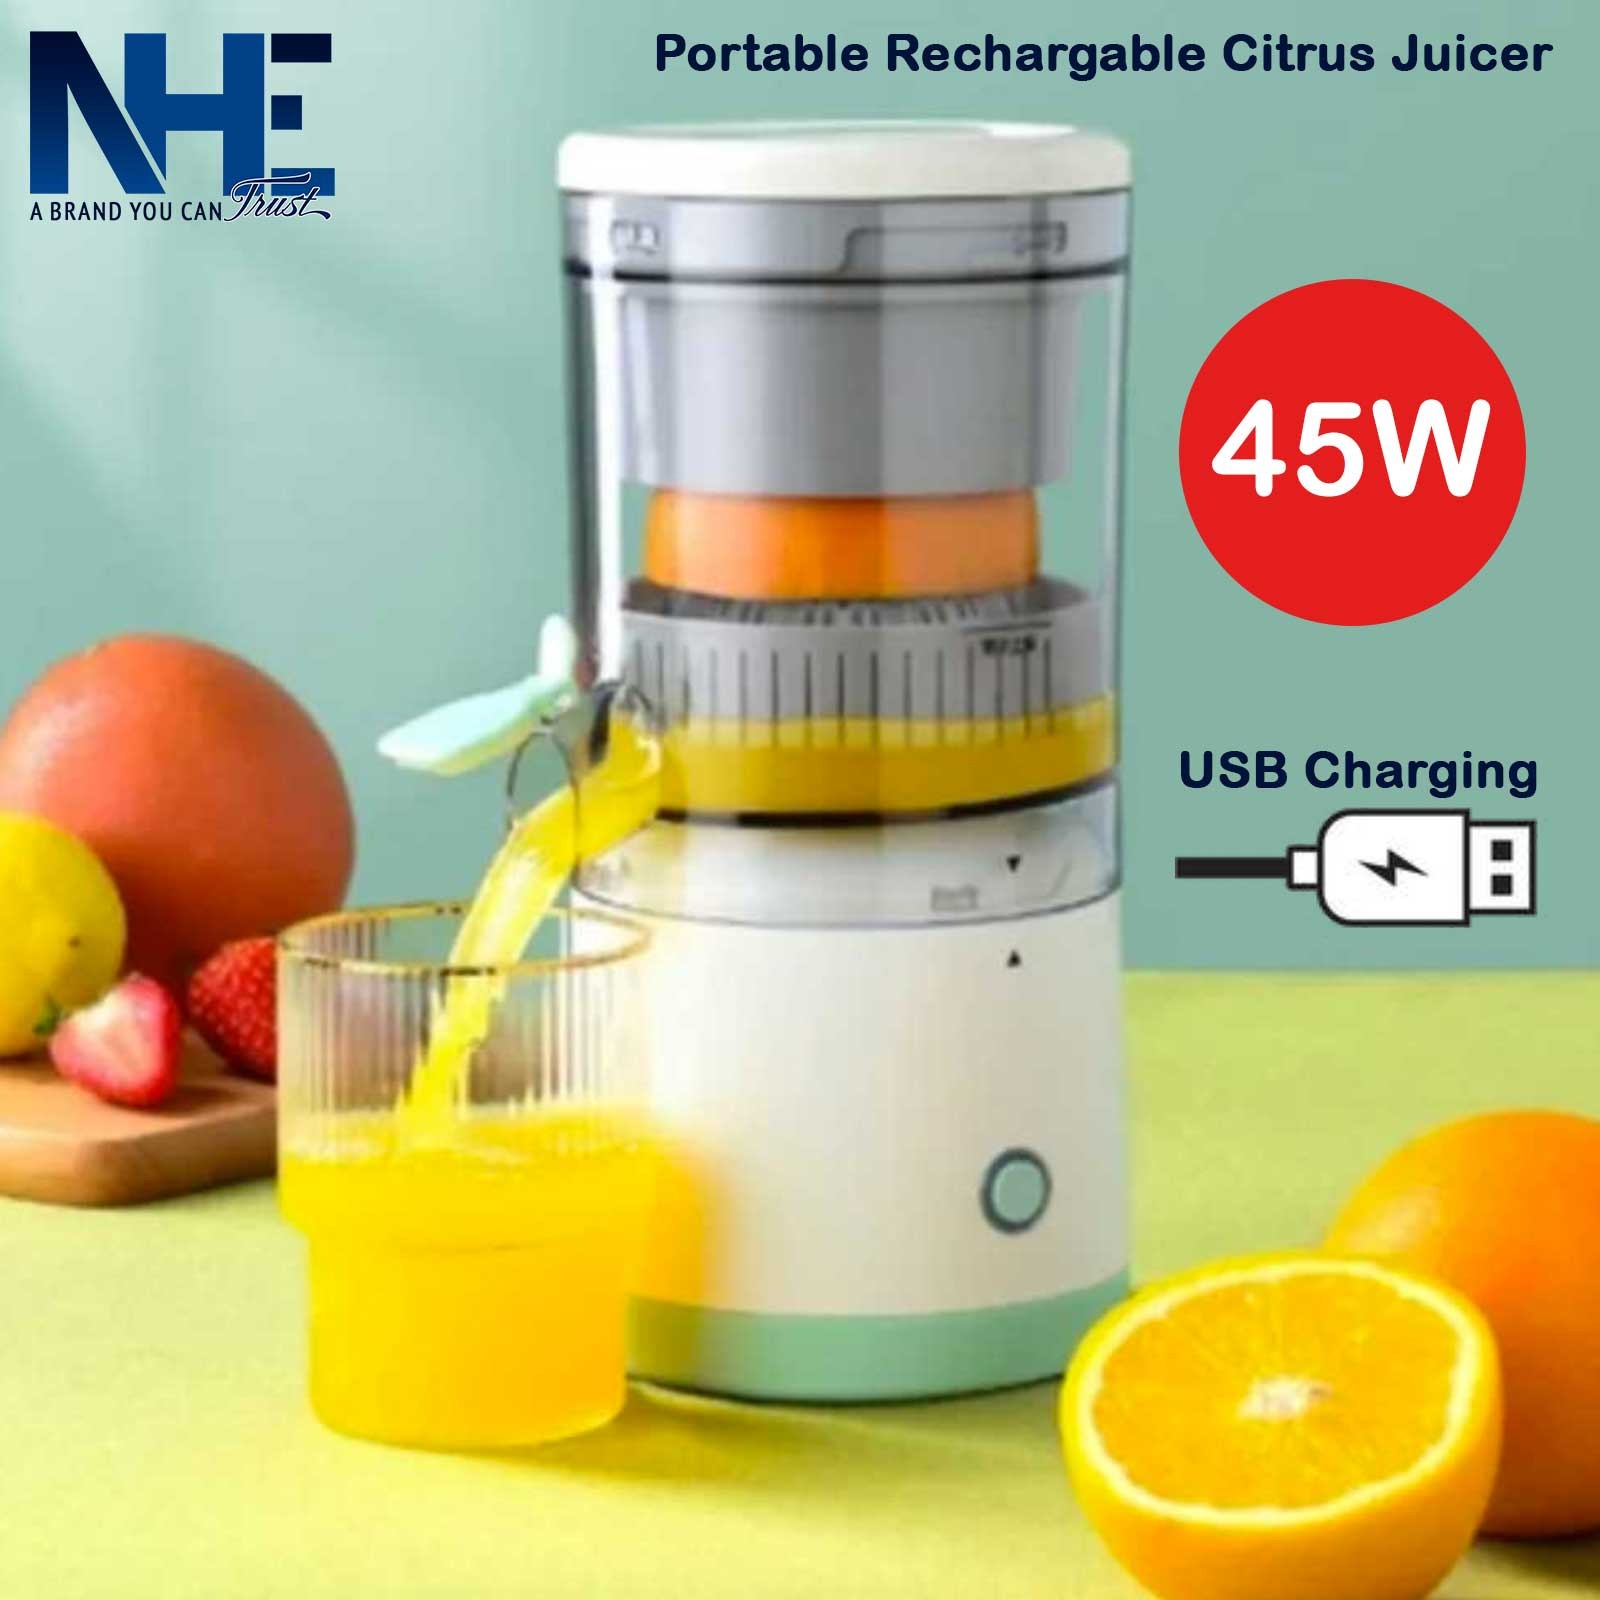 Portable Rechargeable Citrus Juicer Model: MDC1